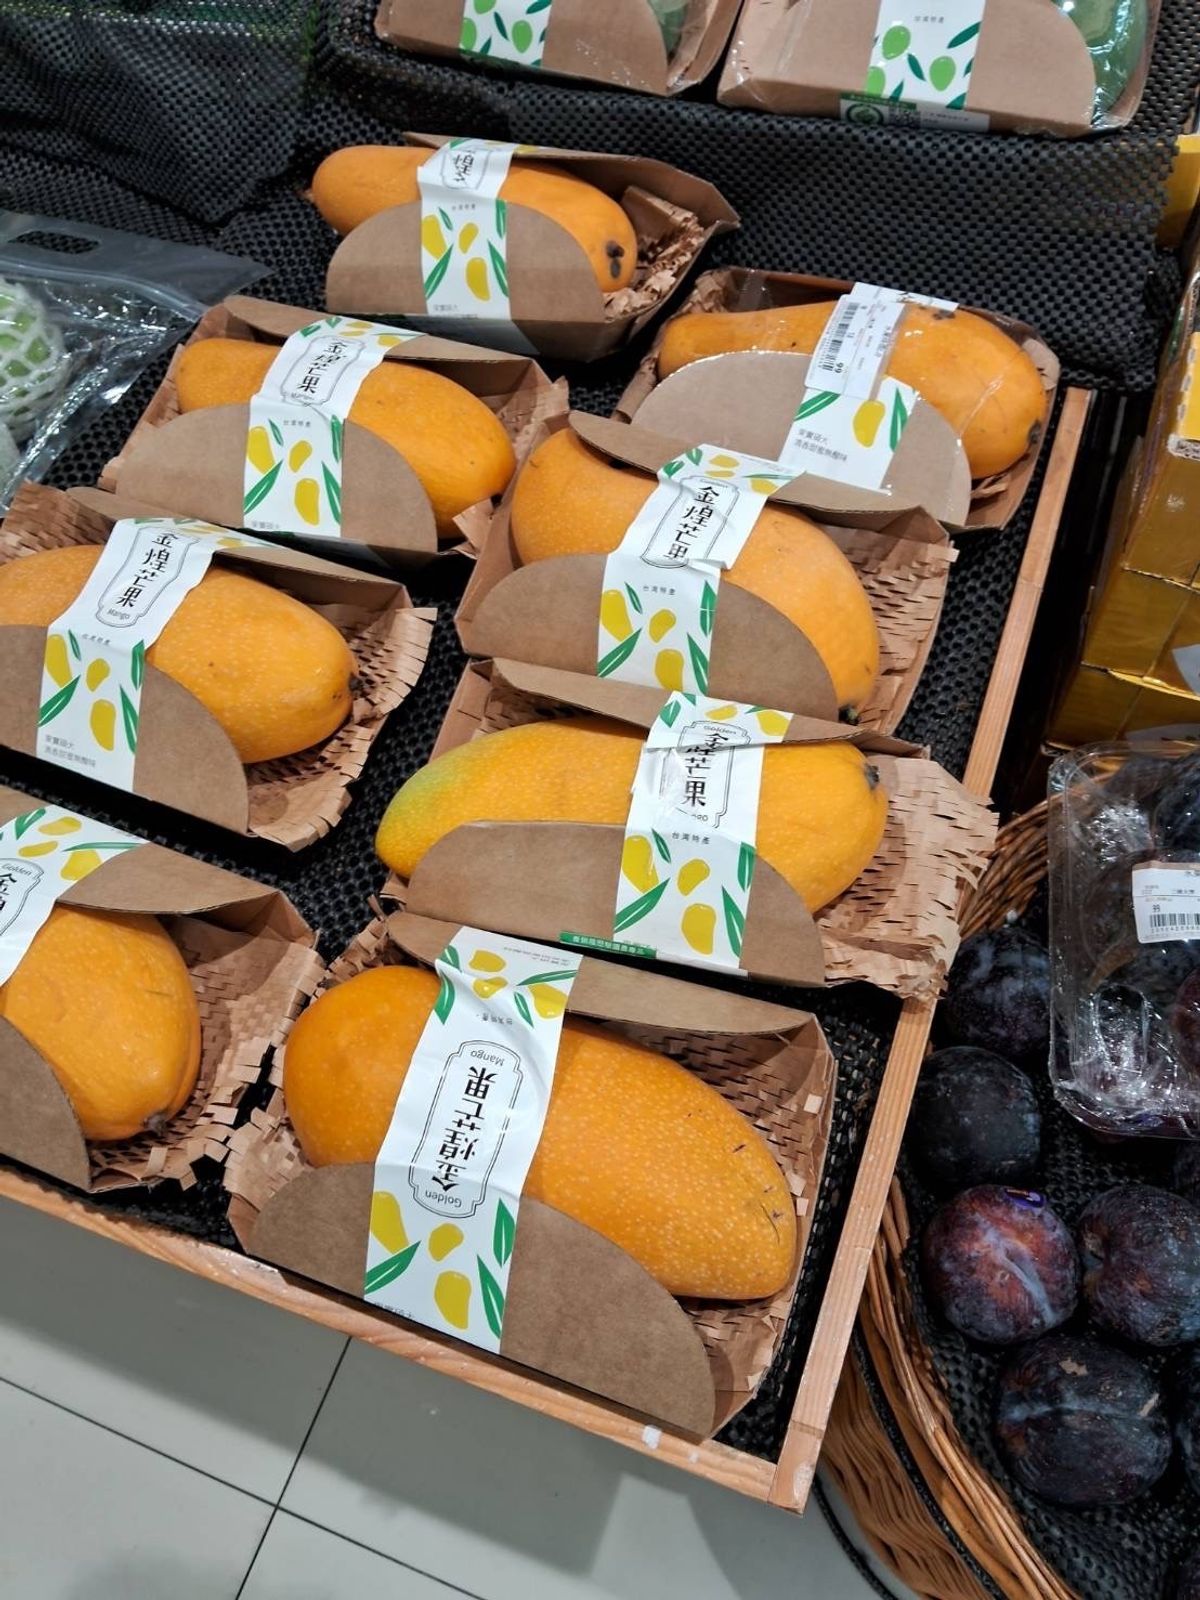 芒果季: 芒果也換新裝，紙緩衝大舉進攻龍頭超市